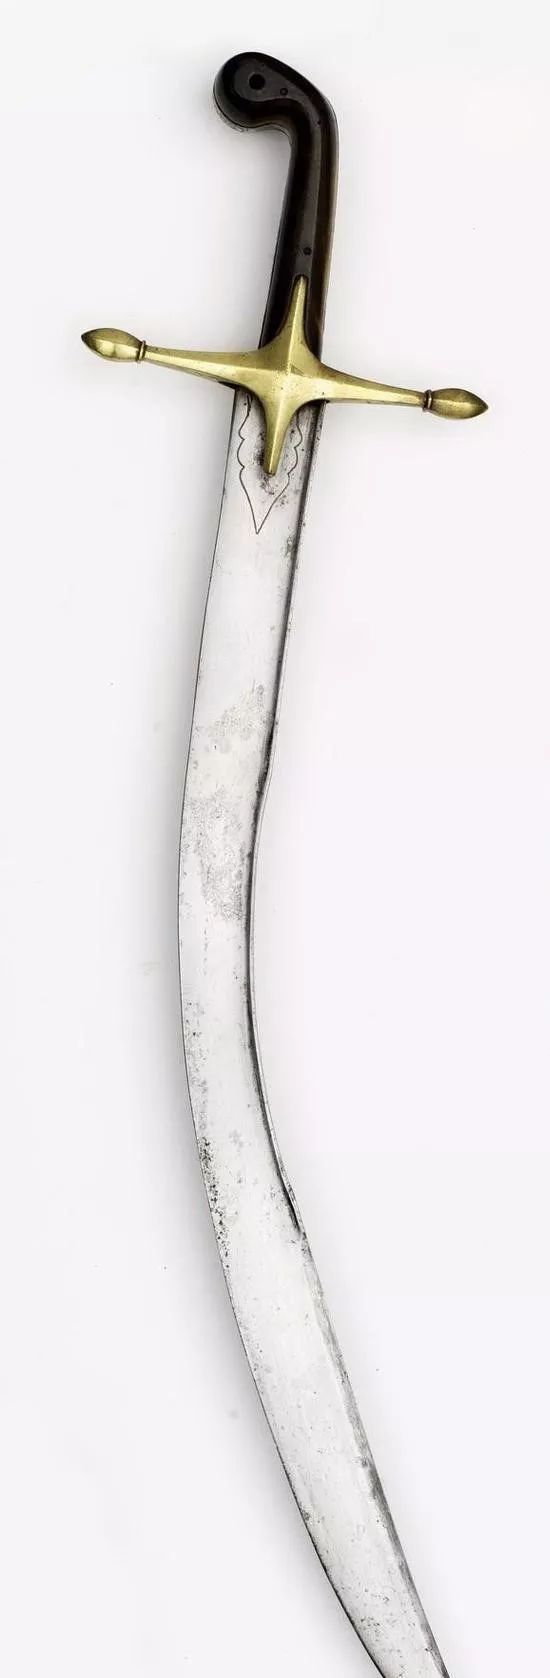 土耳其弯刀相比,这柄弯刀在形制上依然属于基利或帕拉,并非是亚特坎